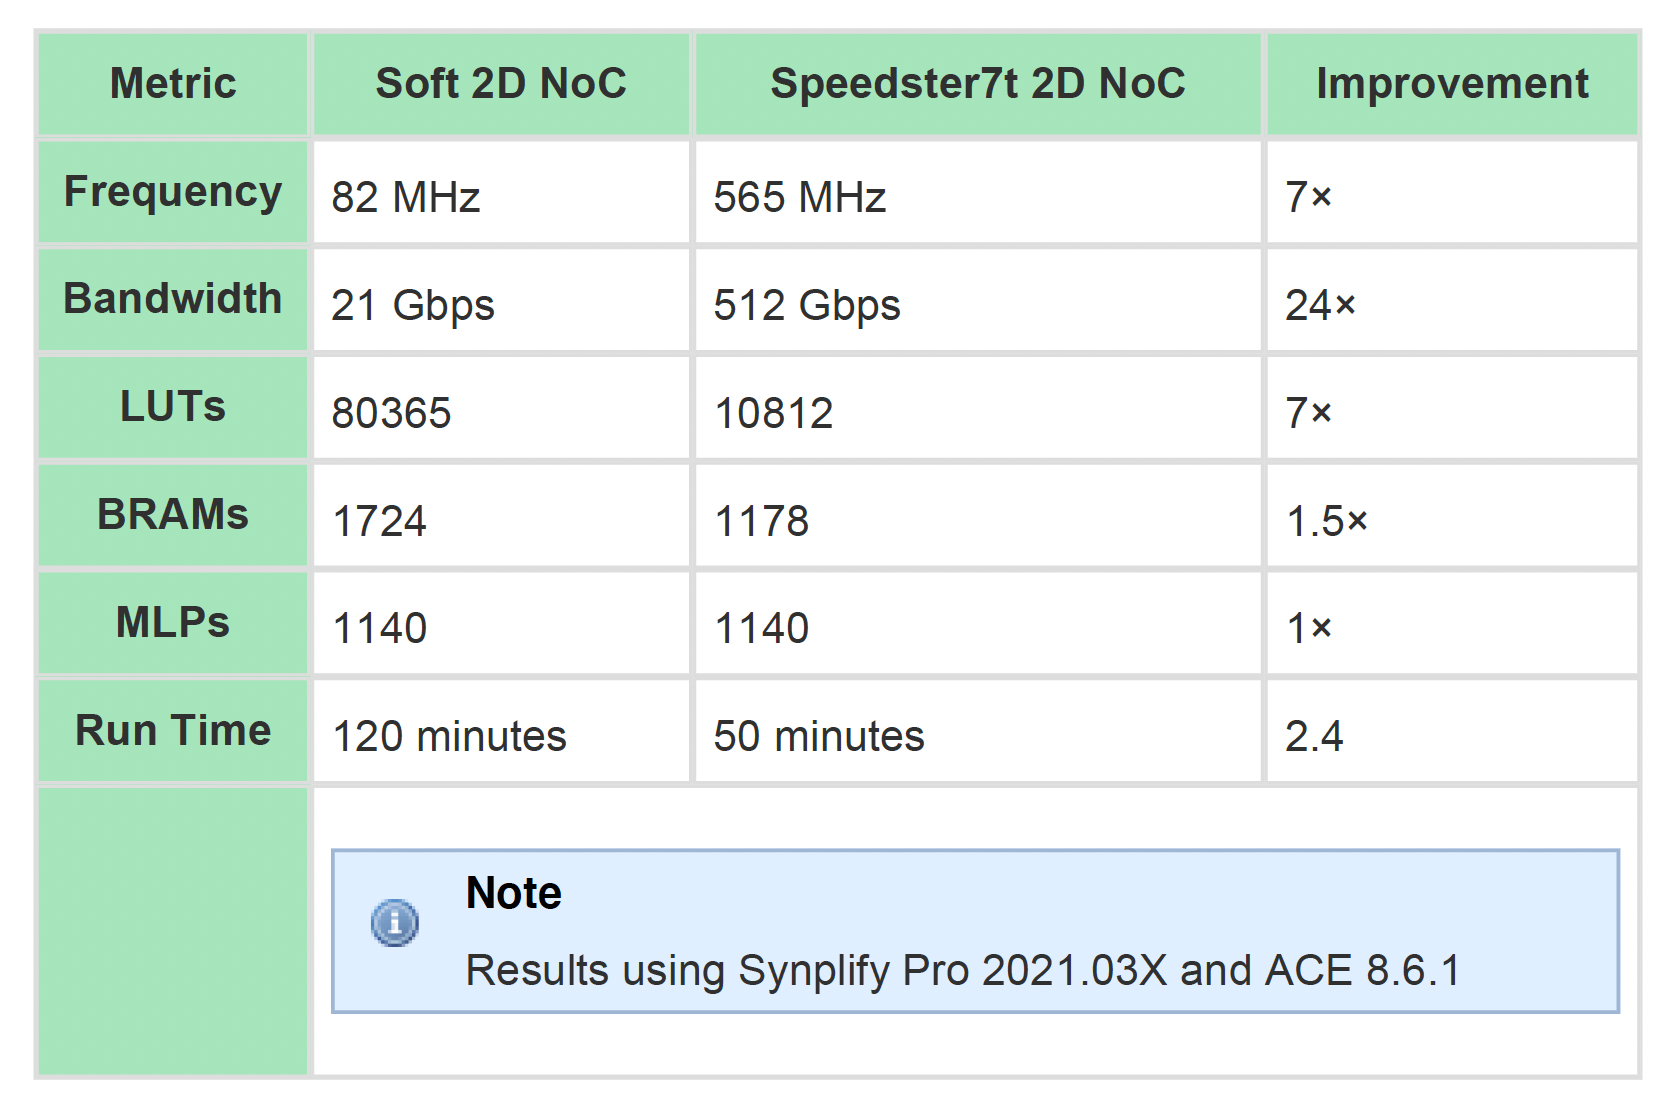 Speedster7t 2D NoC vs Soft 2D NoC